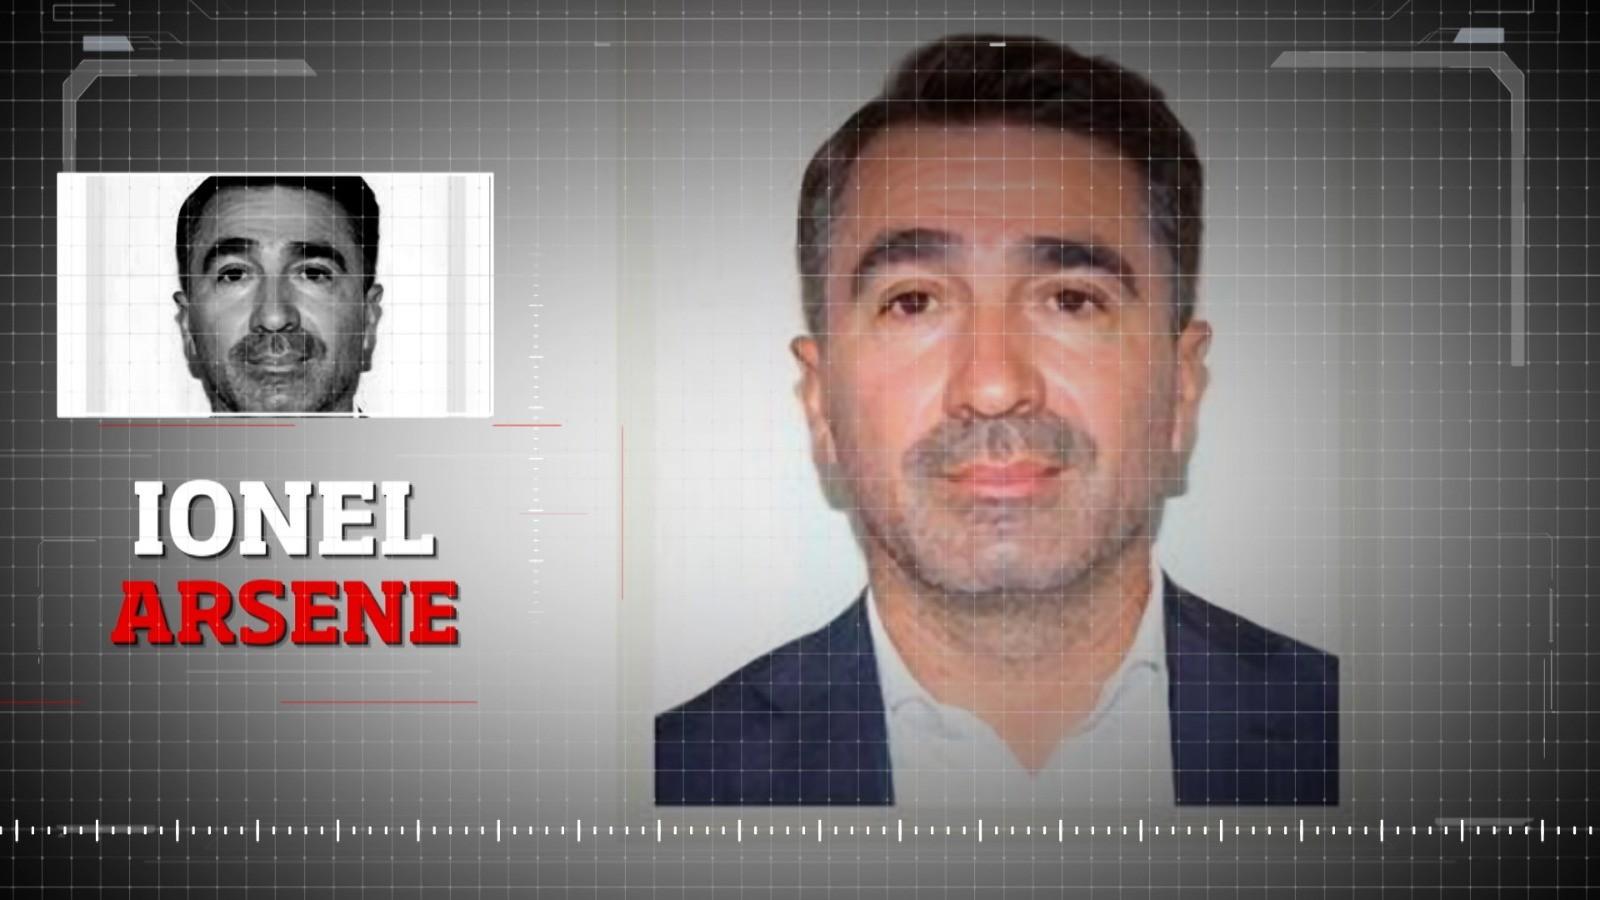 Il barone PSD di Neamț, Ionel Arsène, potrebbe essere estradato dall’Italia.  La decisione della Corte d’Appello di Bari non è definitiva